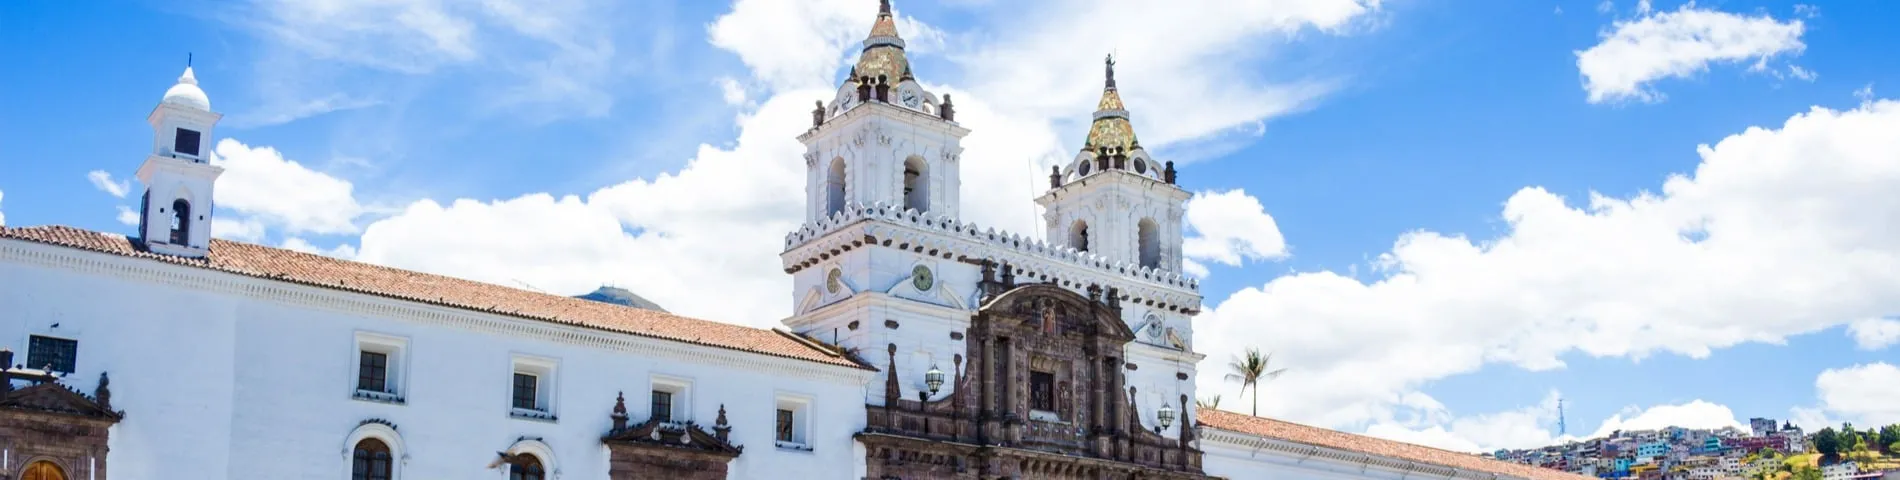 Quito - Curs estàndard